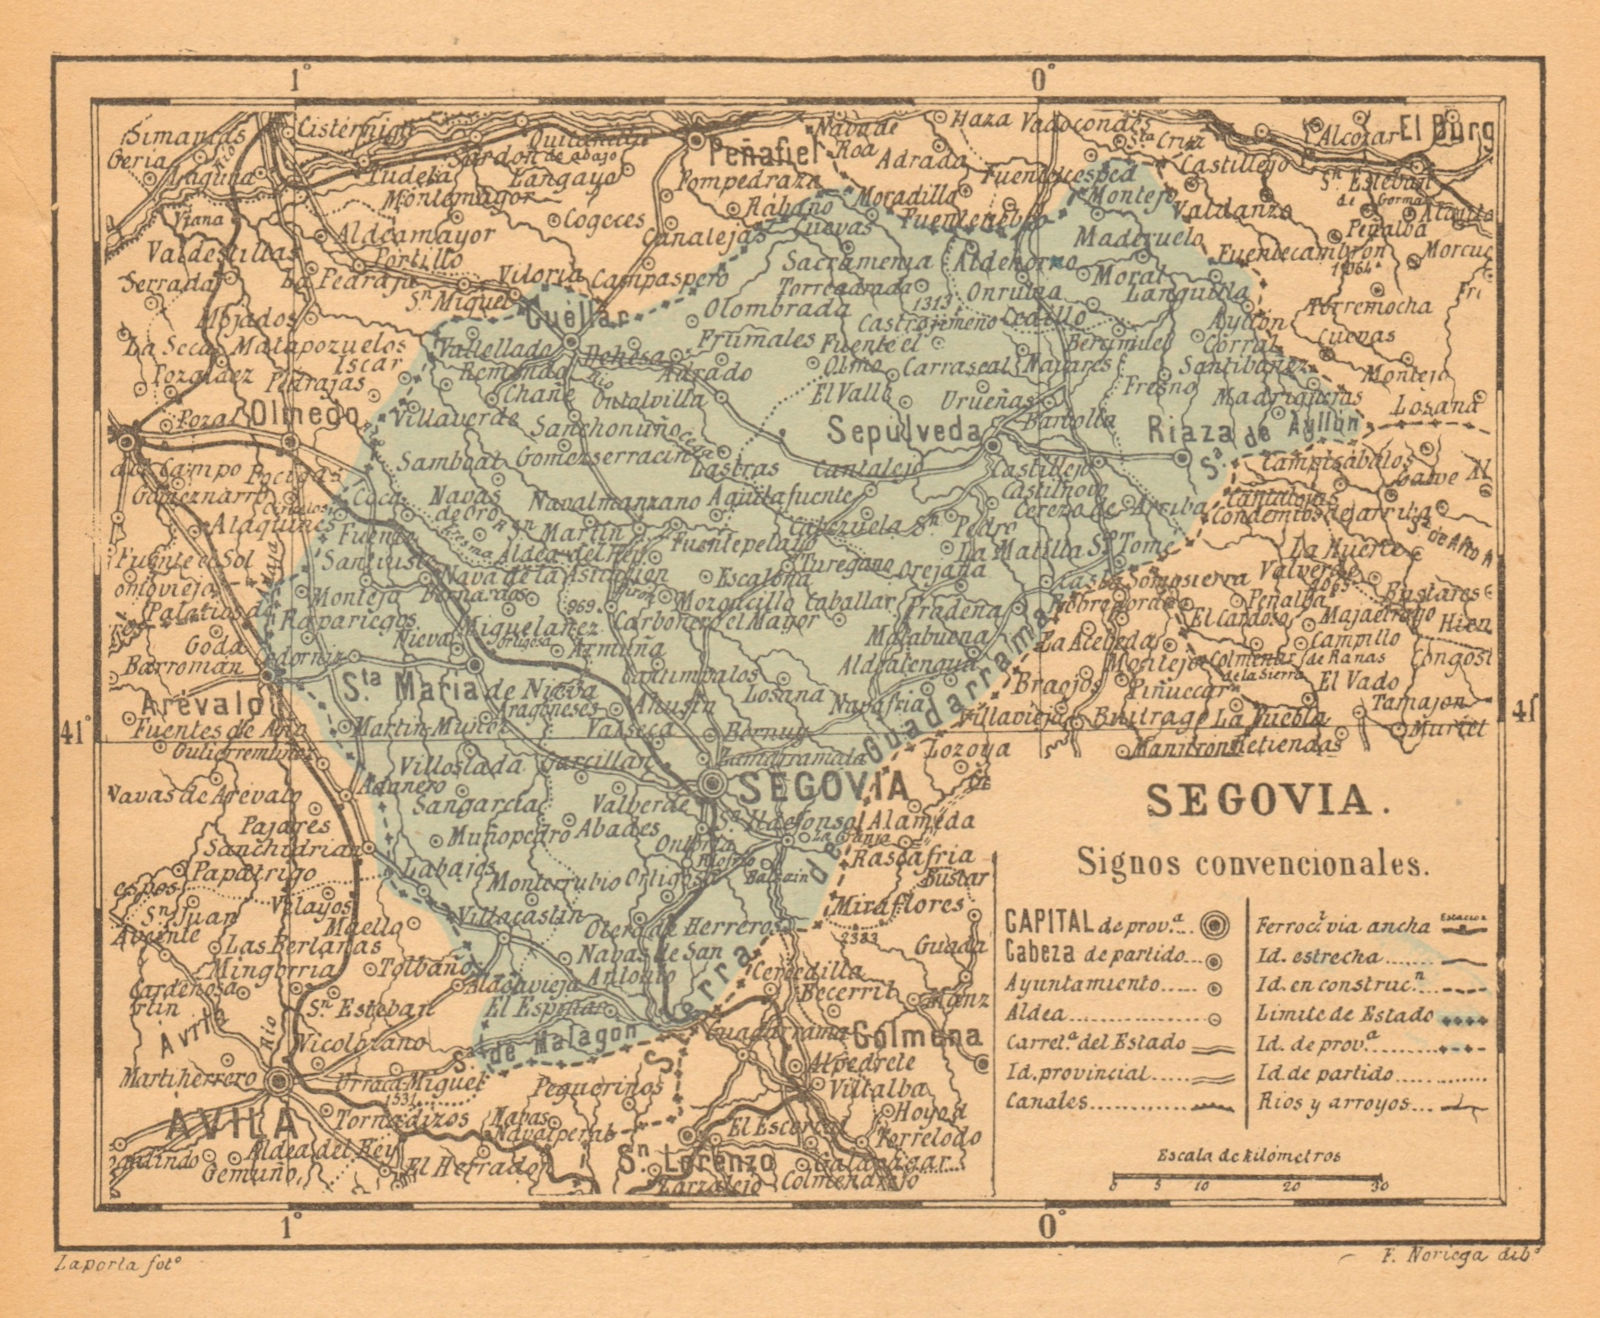 SEGOVIA. Castilla y León. Mapa antiguo de la provincia 1914 old antique